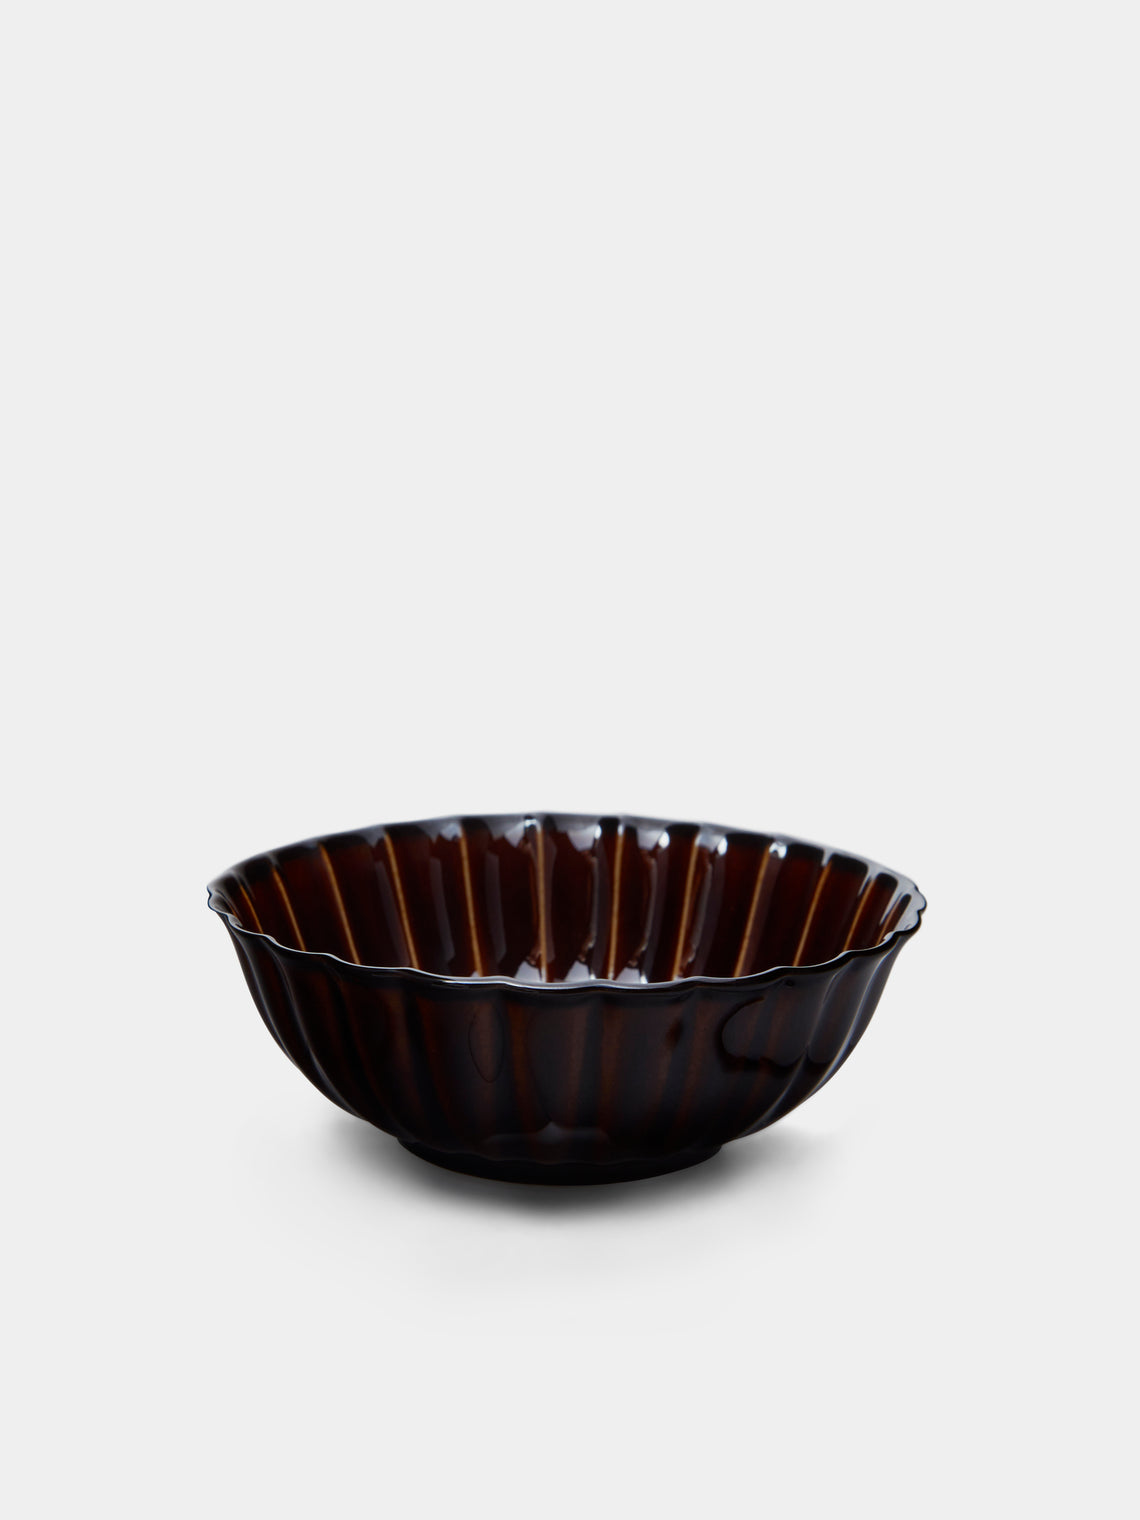 Kaneko Kohyo - Giyaman Urushi Ceramic Shallow Bowls (Set of 4) - Brown - ABASK - 